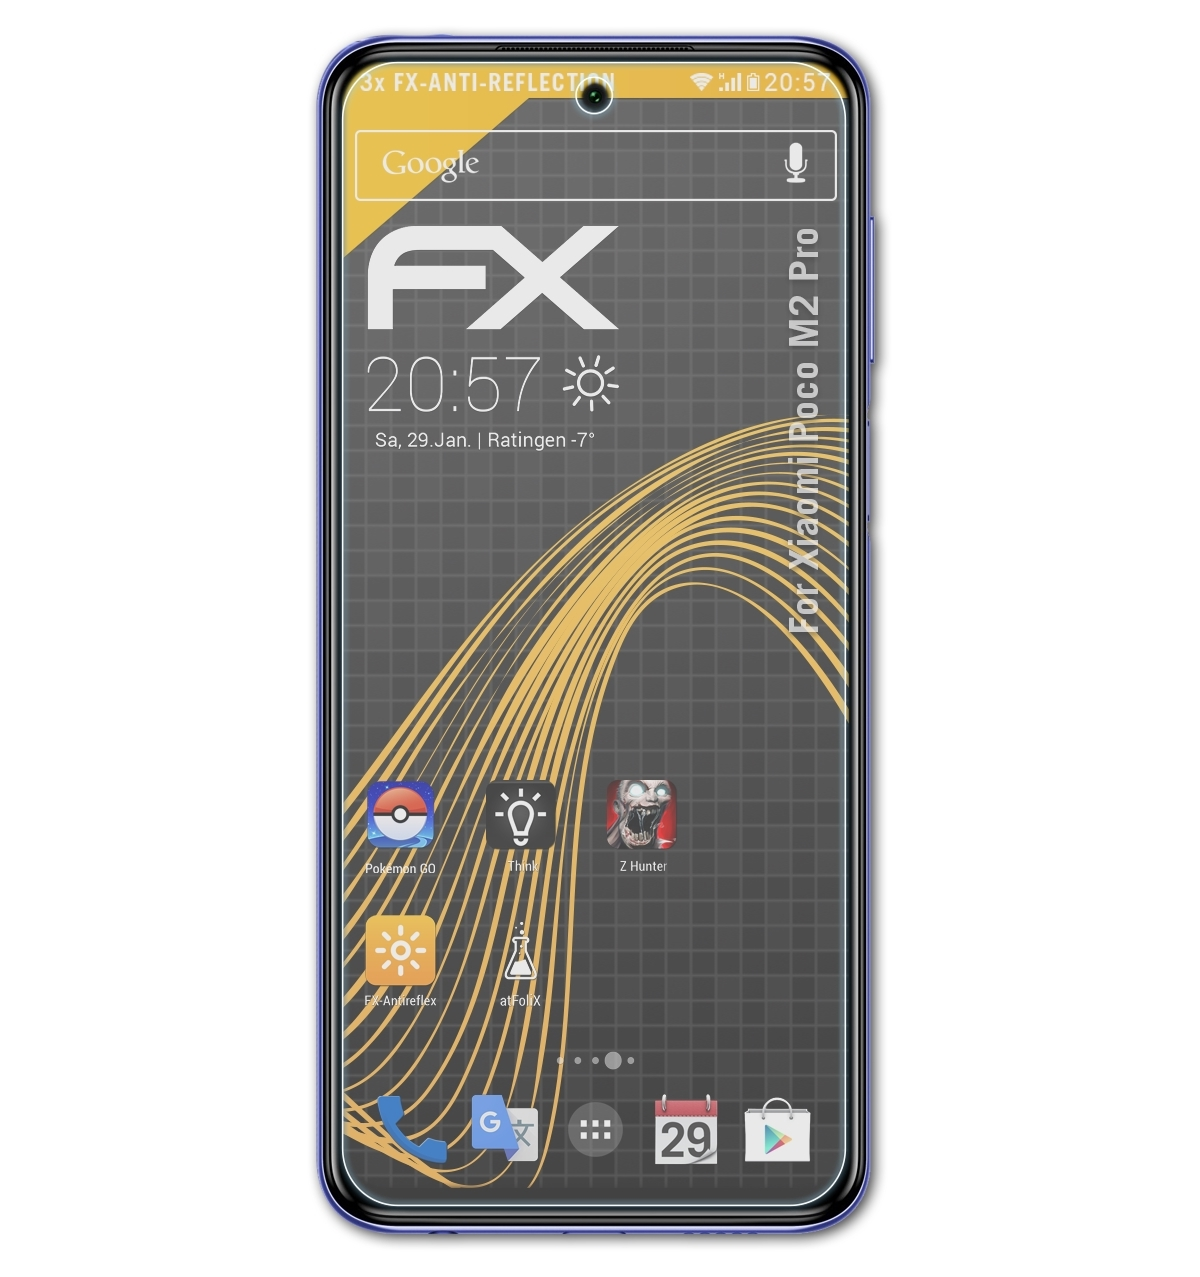 Poco M2 Xiaomi Displayschutz(für Pro) ATFOLIX 3x FX-Antireflex